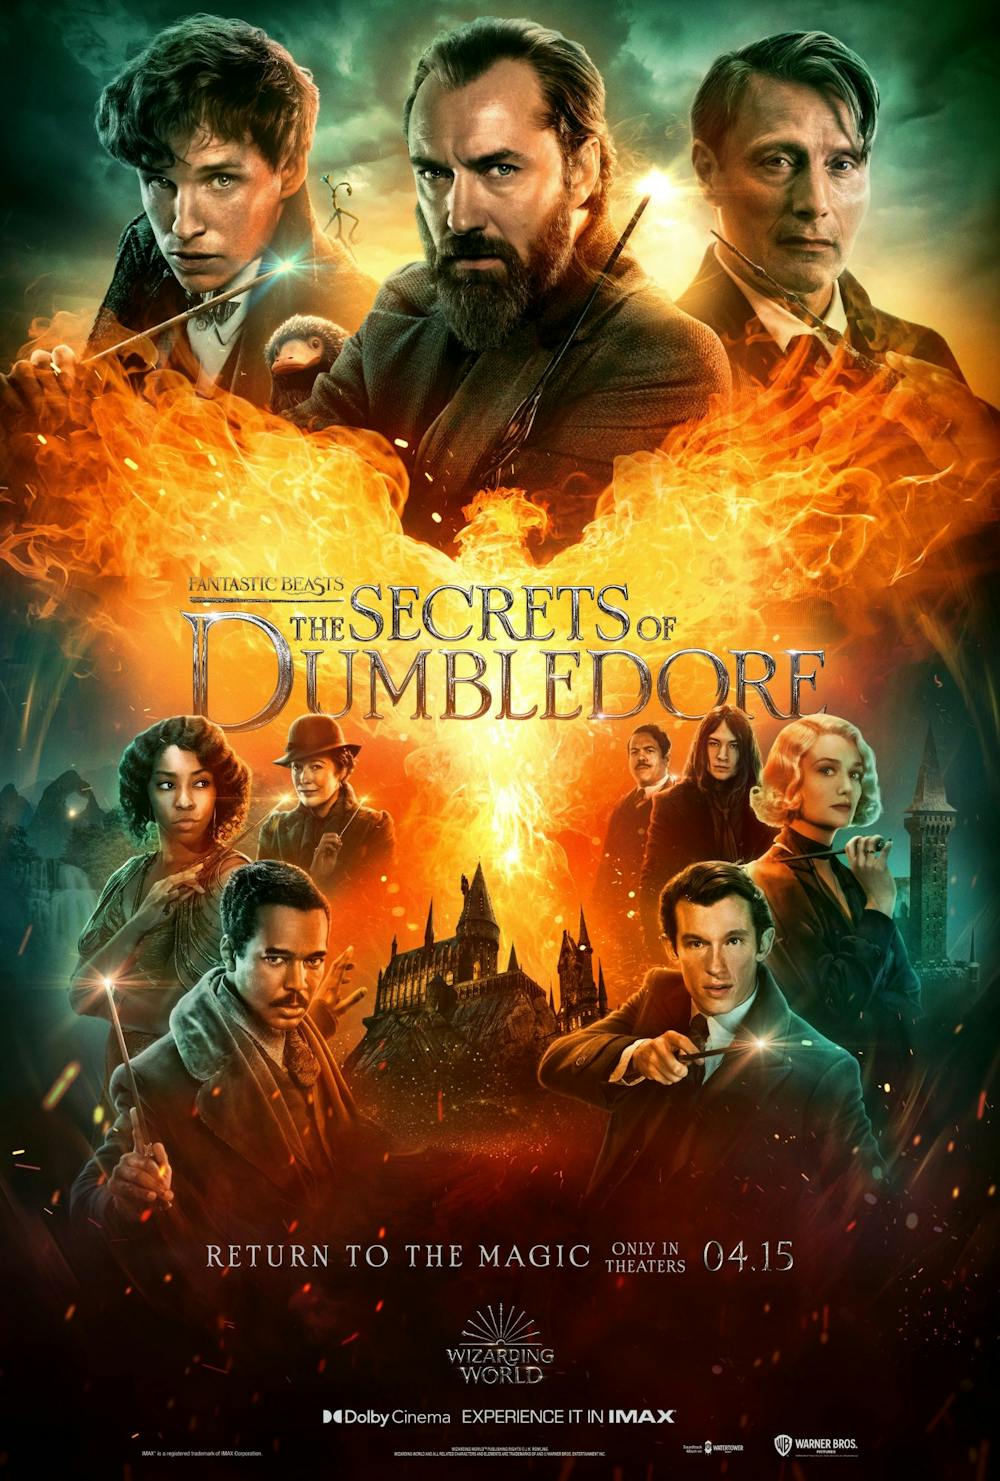 Review: ‘Fantastic Beasts: The Secrets of Dumbledore’ is a quiet roar